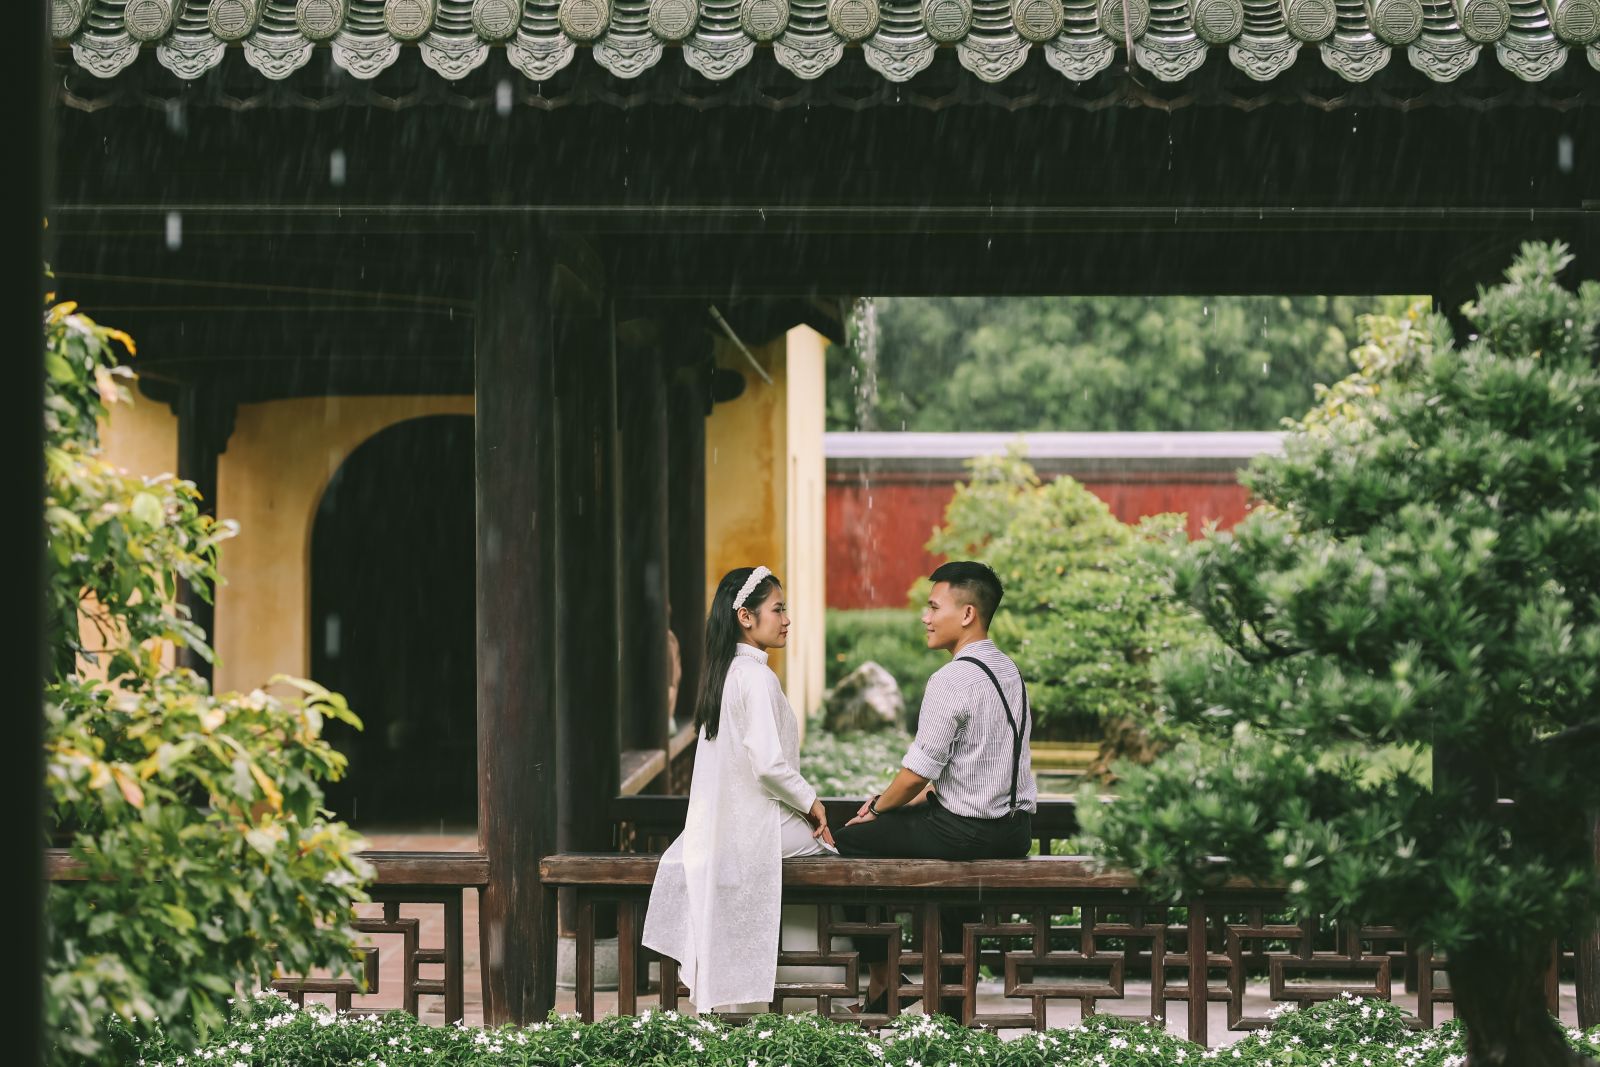 Thieu Phuong Garden and the young couple